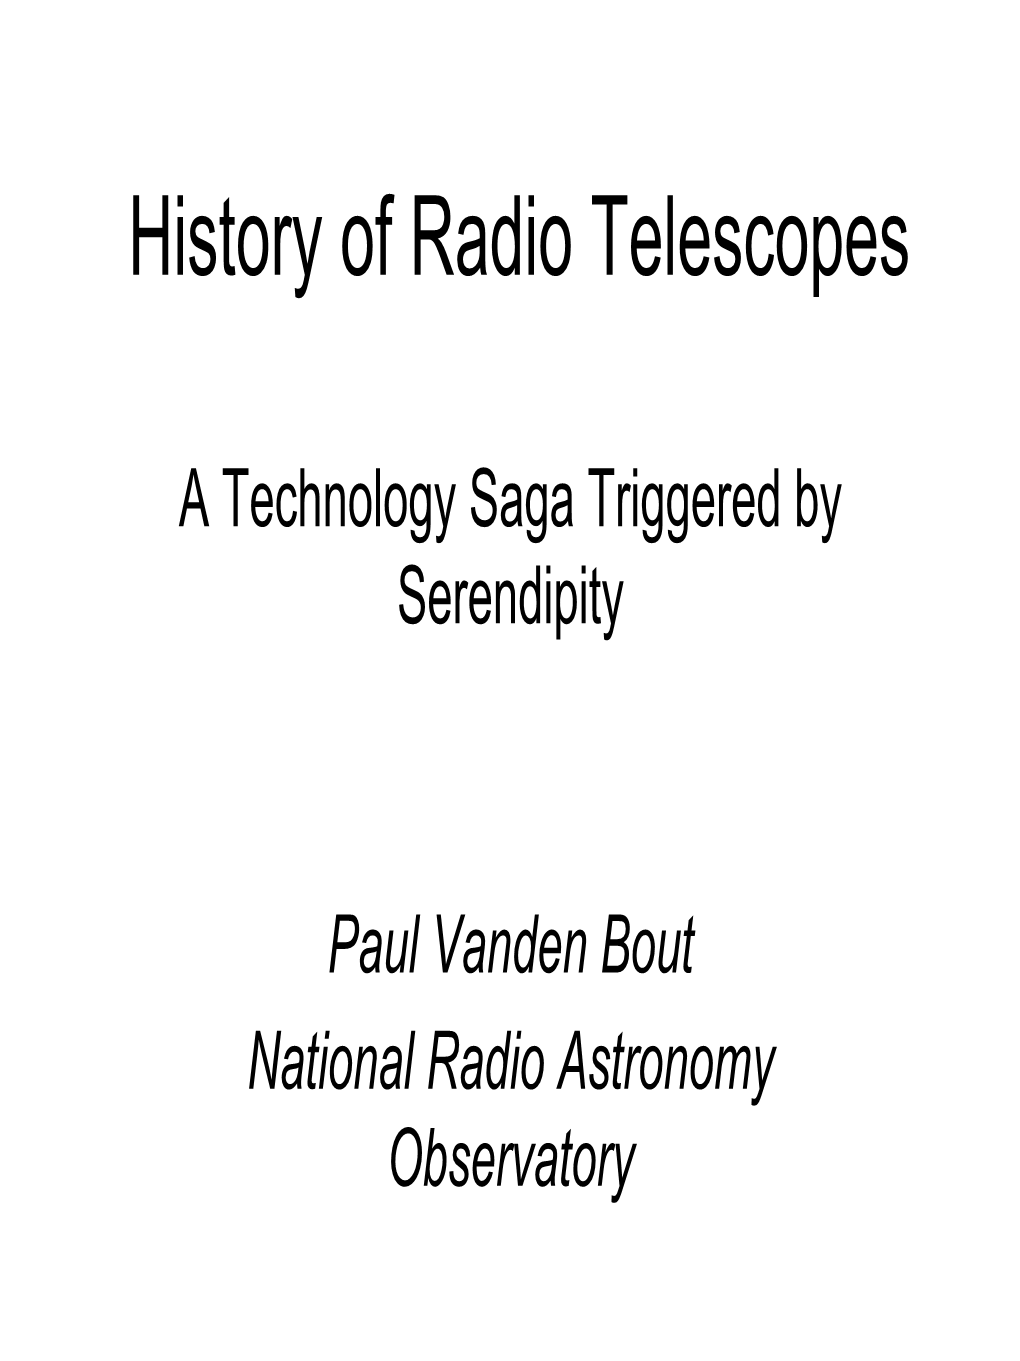 The History of Radio Telescopes